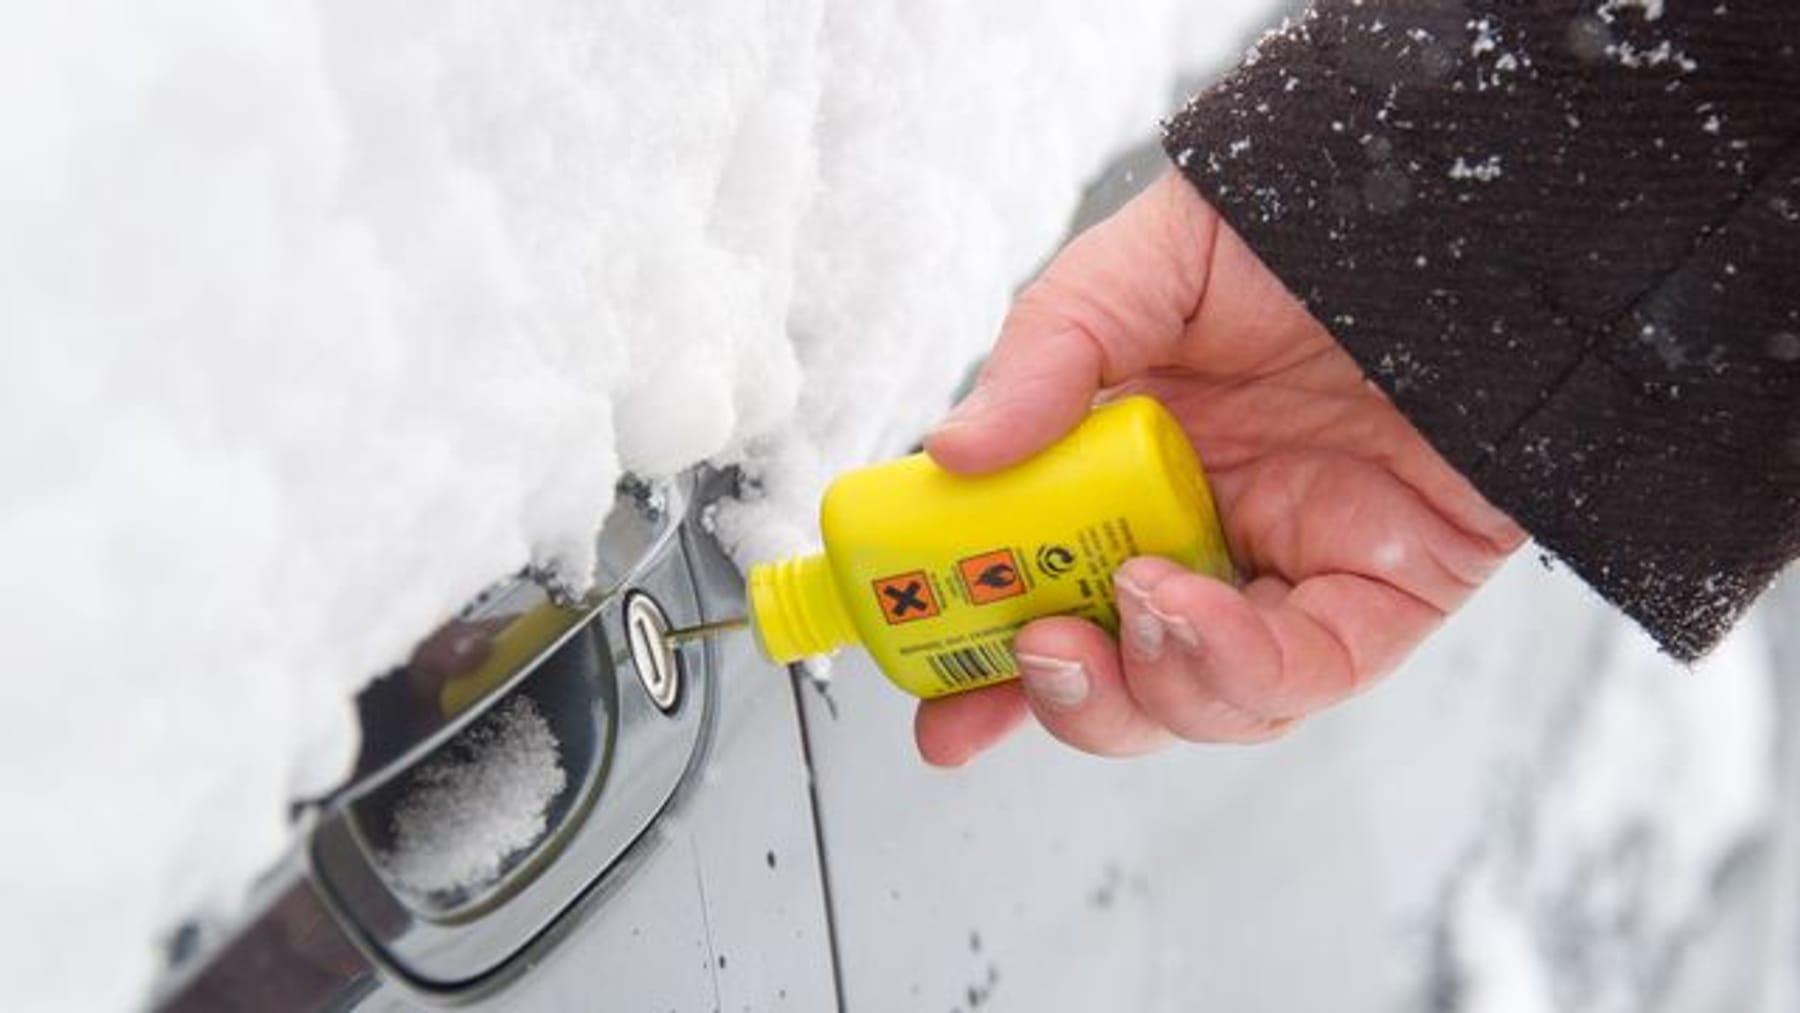 Enteiserspray oder warmes Wasser? Das hilft bei einer zugefrorenen Autotür?